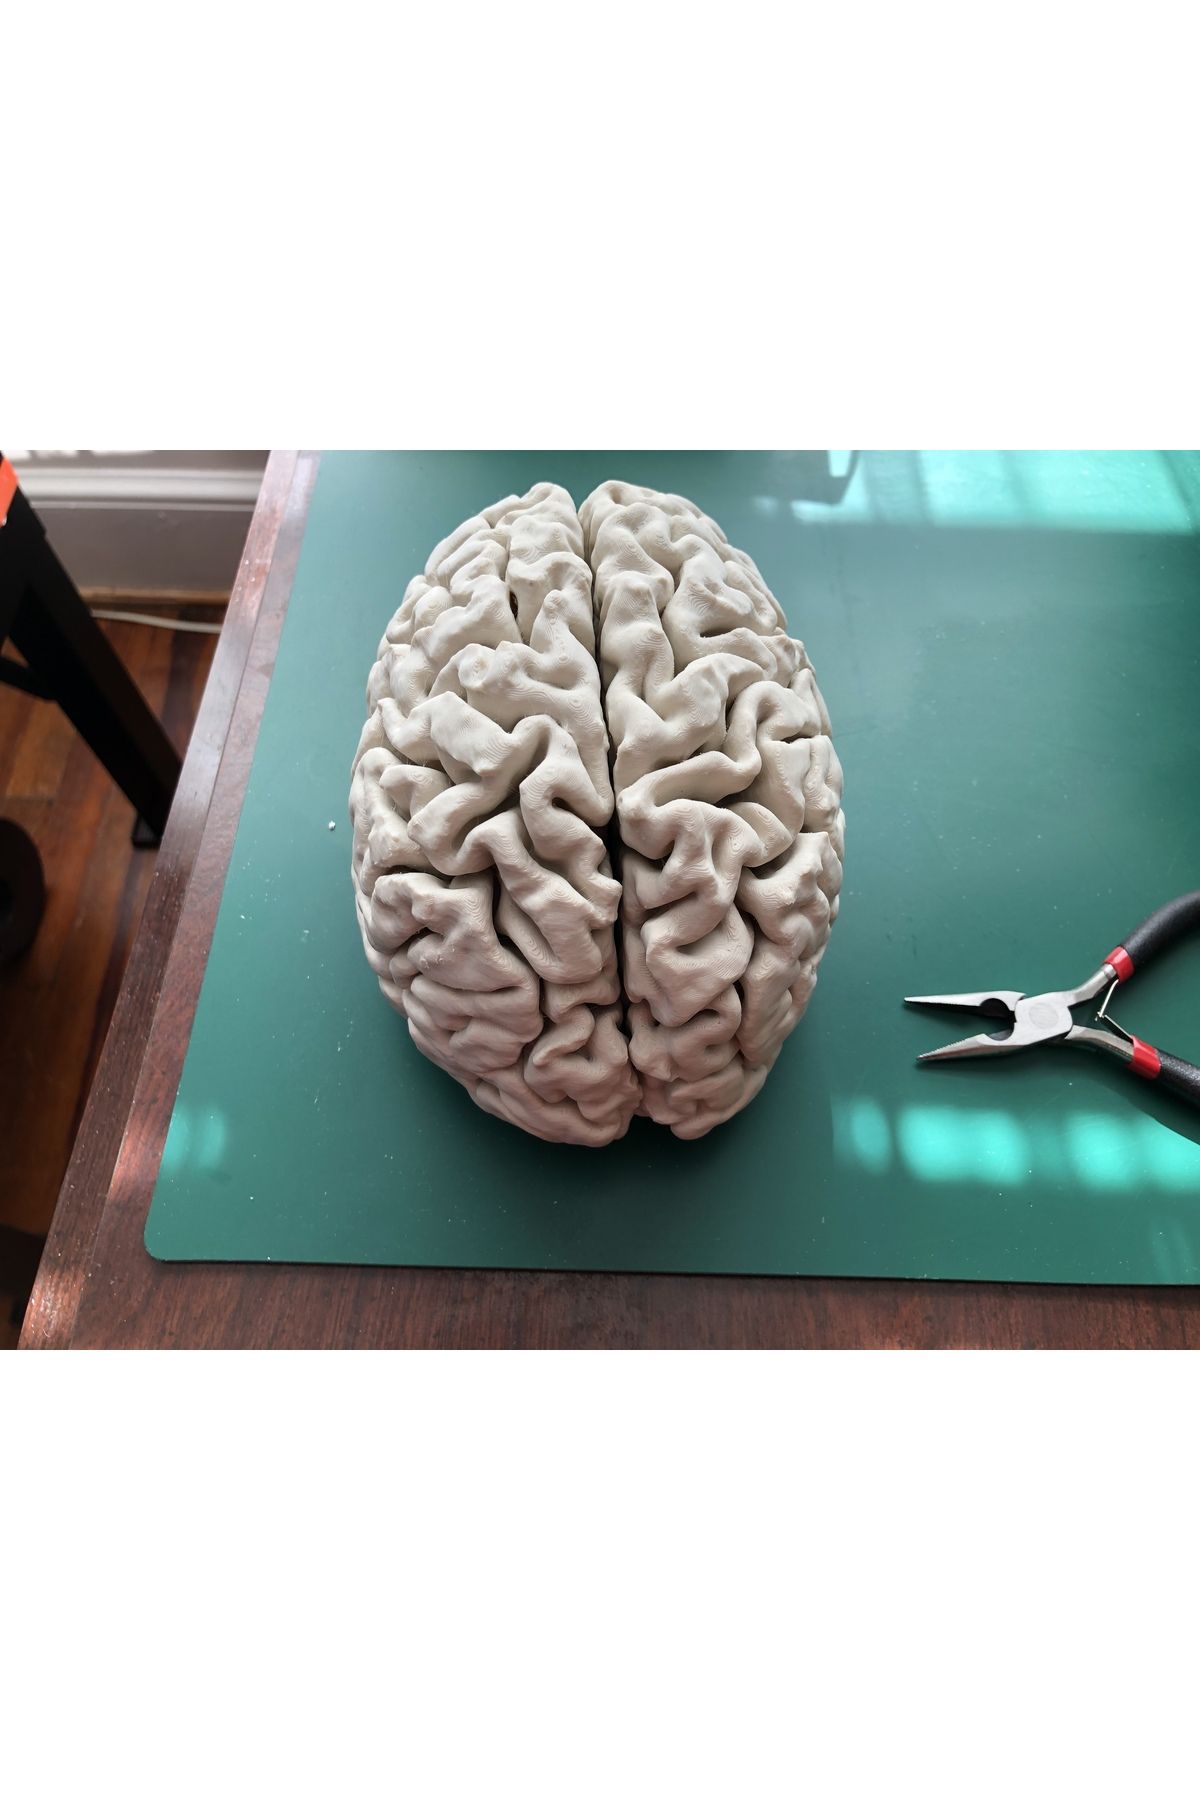 3Duman Insan Beyni Figürü - Beyaz - 10cm